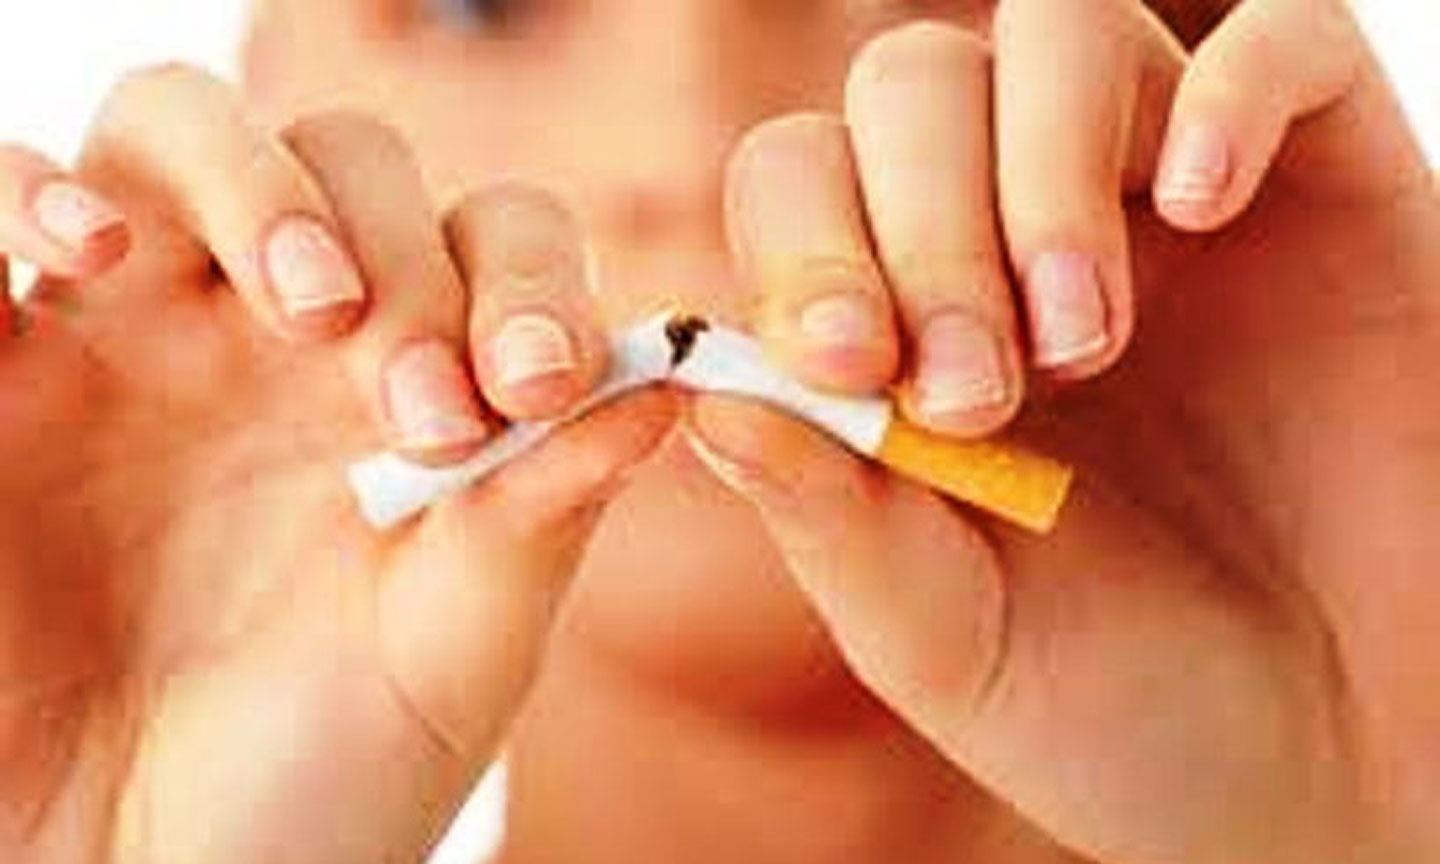 Vì sức khỏe bản thân và người xung quanh hãy từ bỏ thuốc lá.